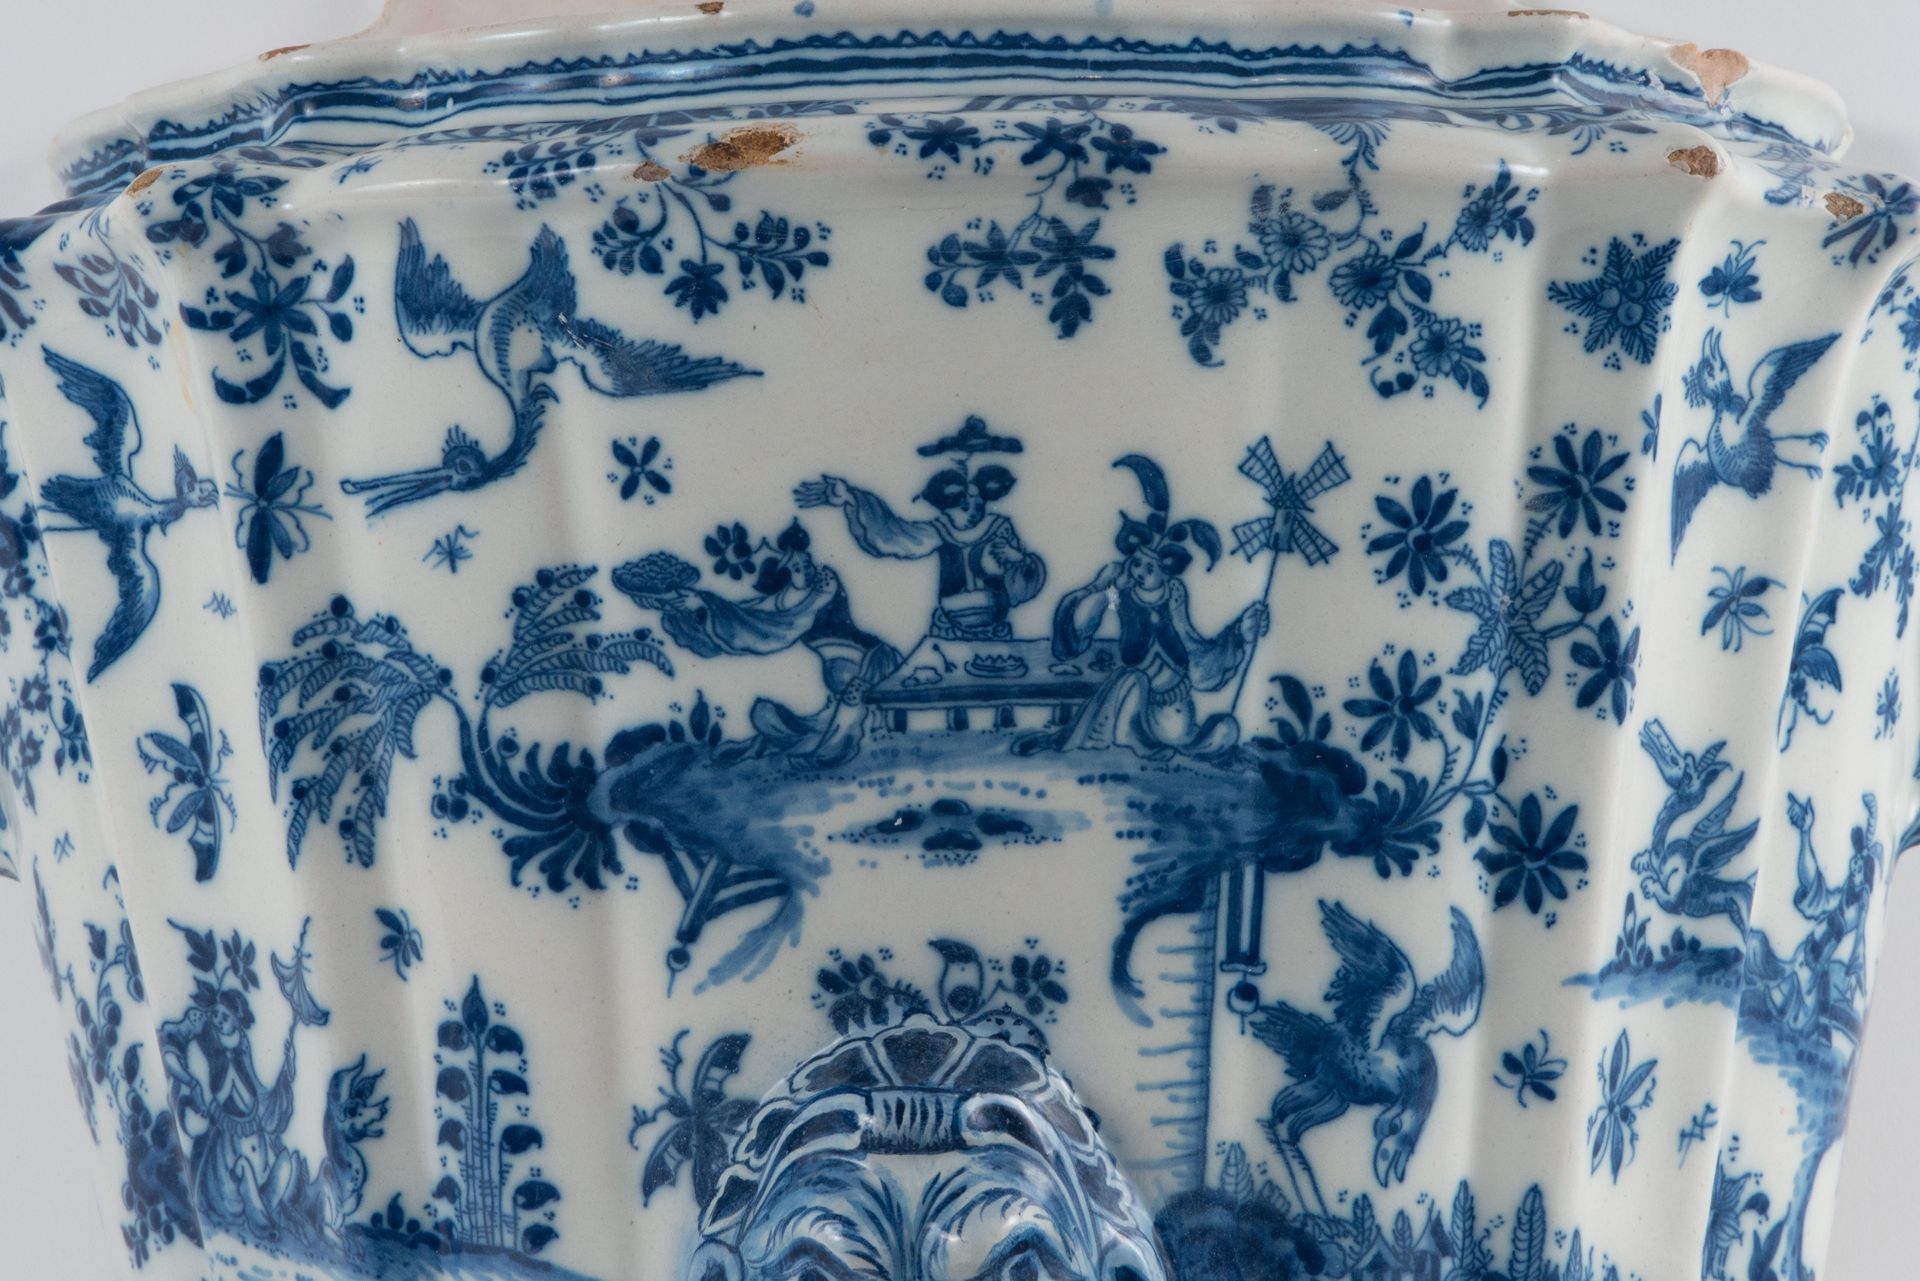 Rare Fountain in Alcora ceramic, 18th century, first period, 18th century - Image 3 of 6